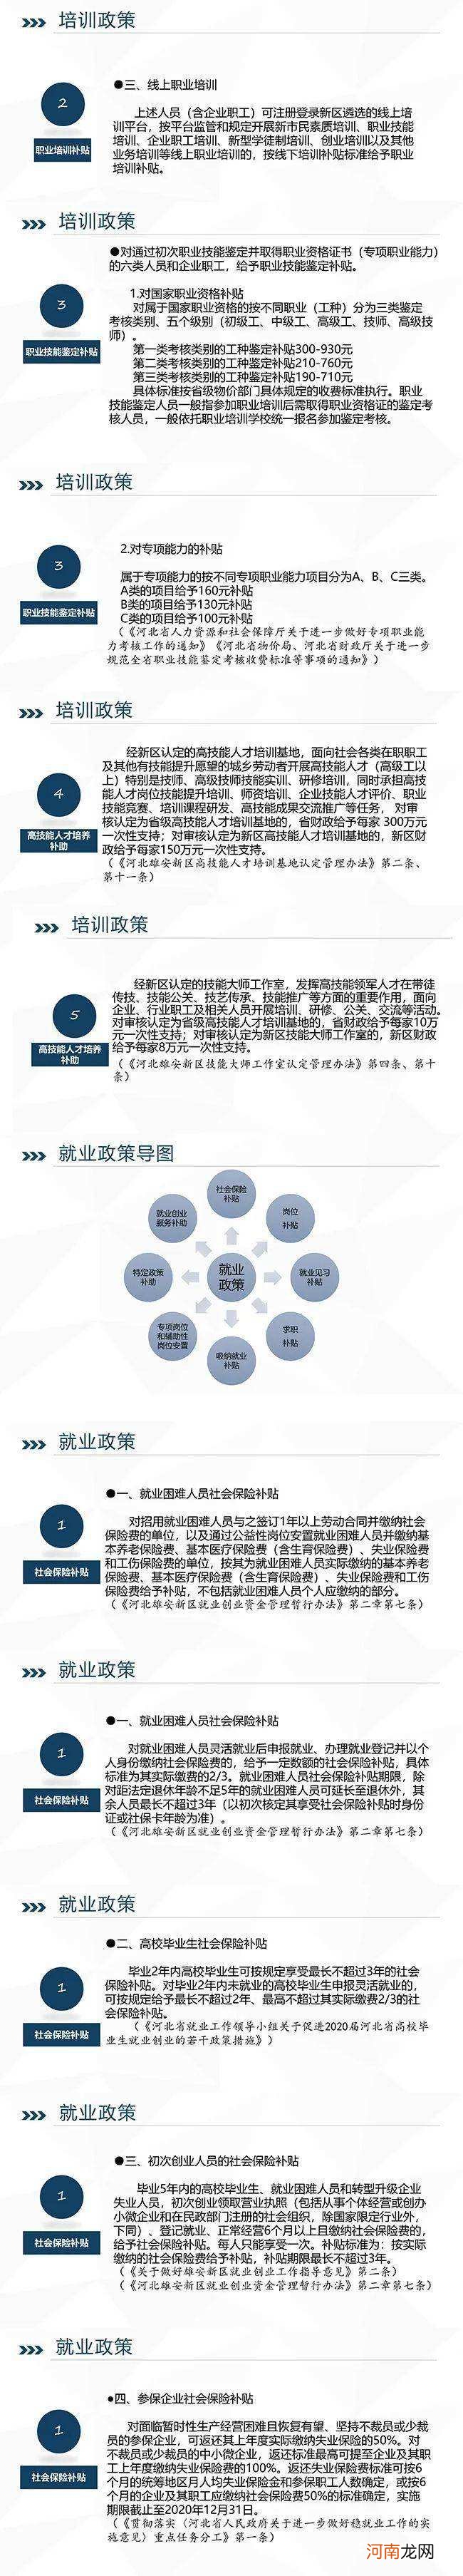 义县创业扶持政策 义乌人才创业补贴政策2020